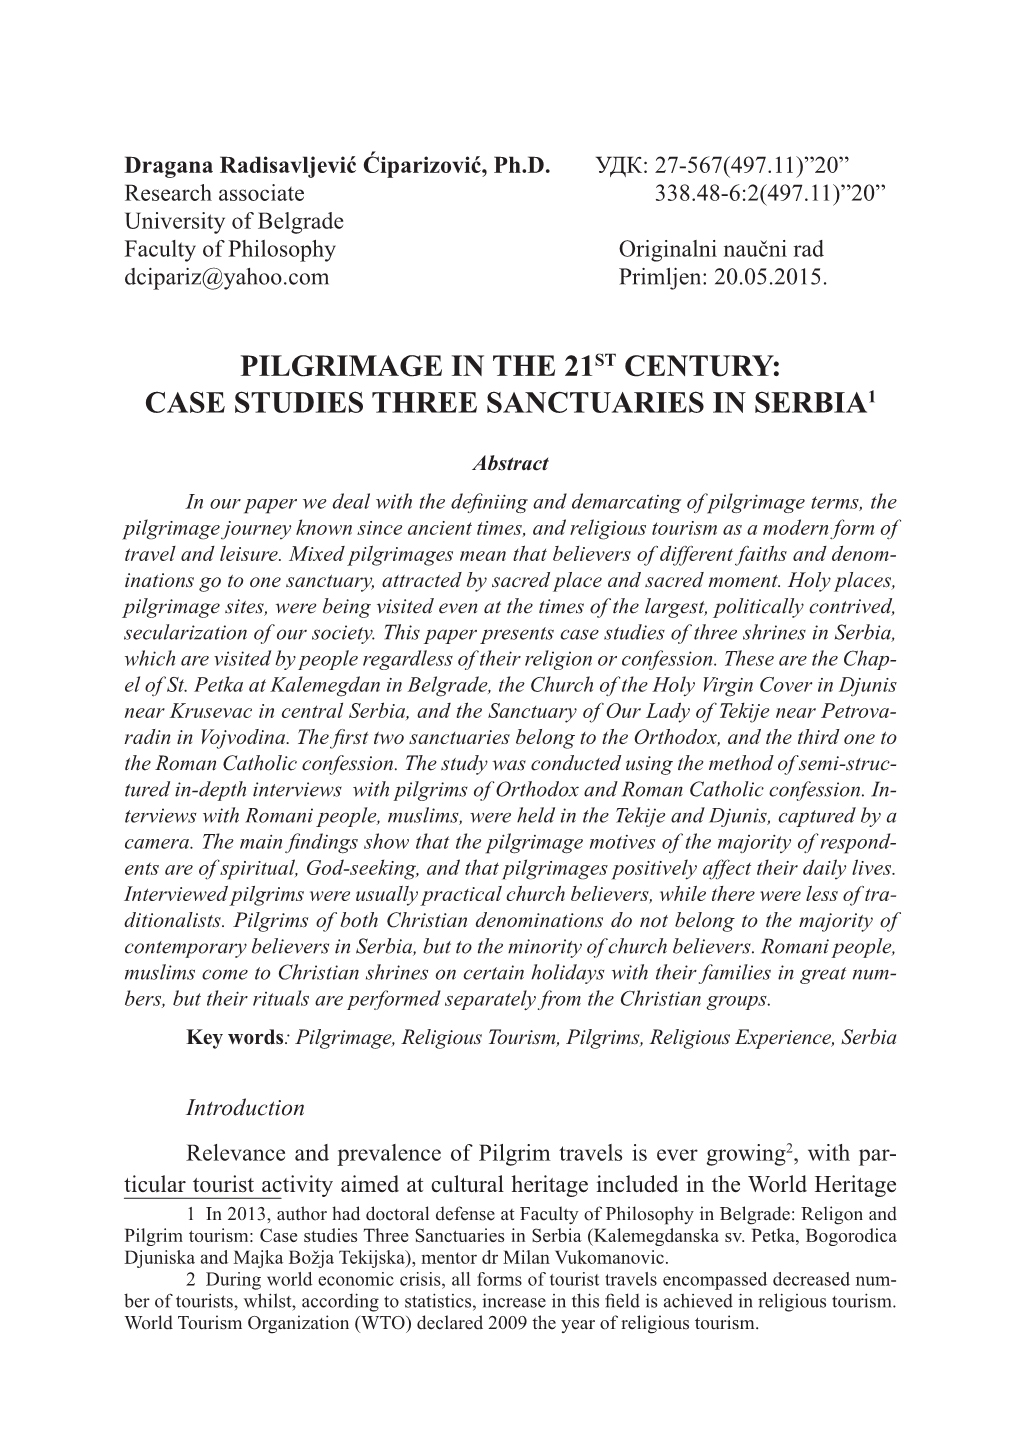 Case Studies Three Sanctuaries in Serbia1